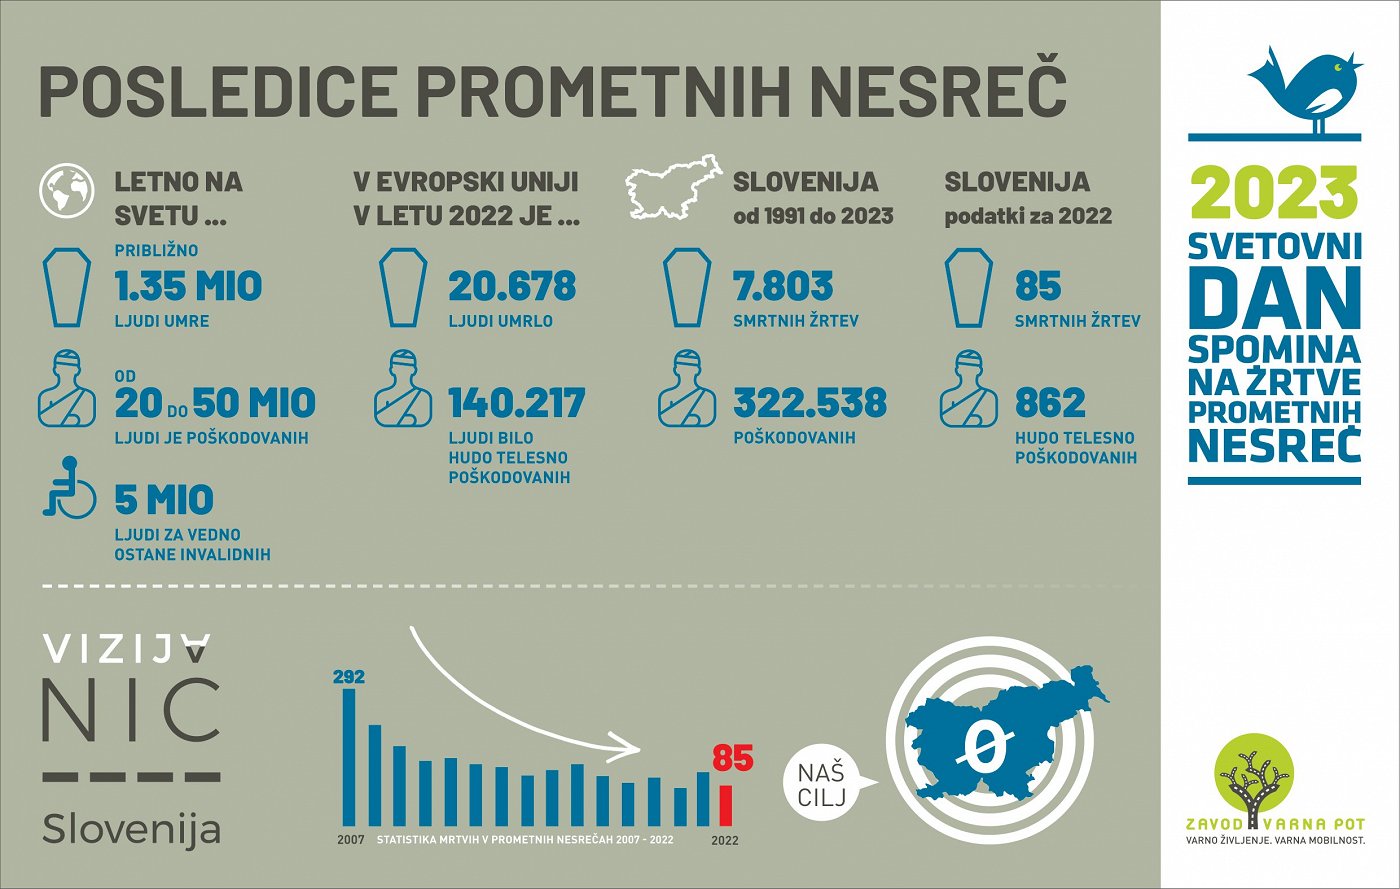 infografika-2023-svetovni-dan-spomina-na-zrtve-prometnih-nesrec-zavod-varna-pot